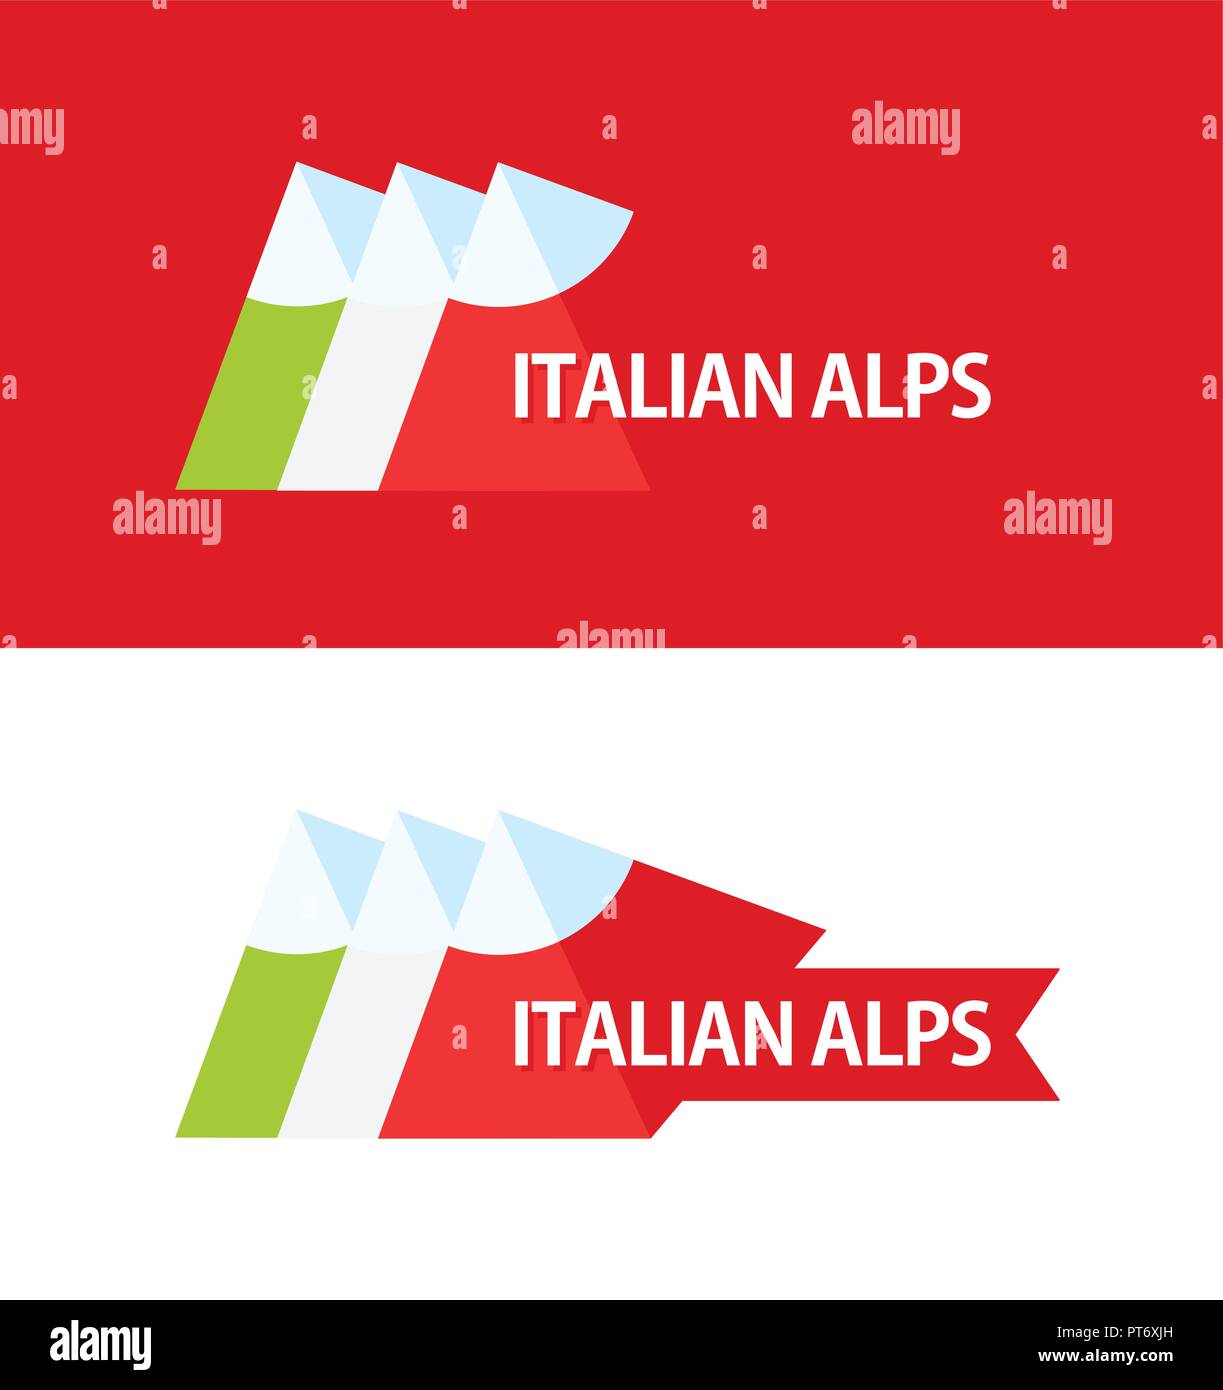 Logo de Alpes Italiennes Illustration de Vecteur